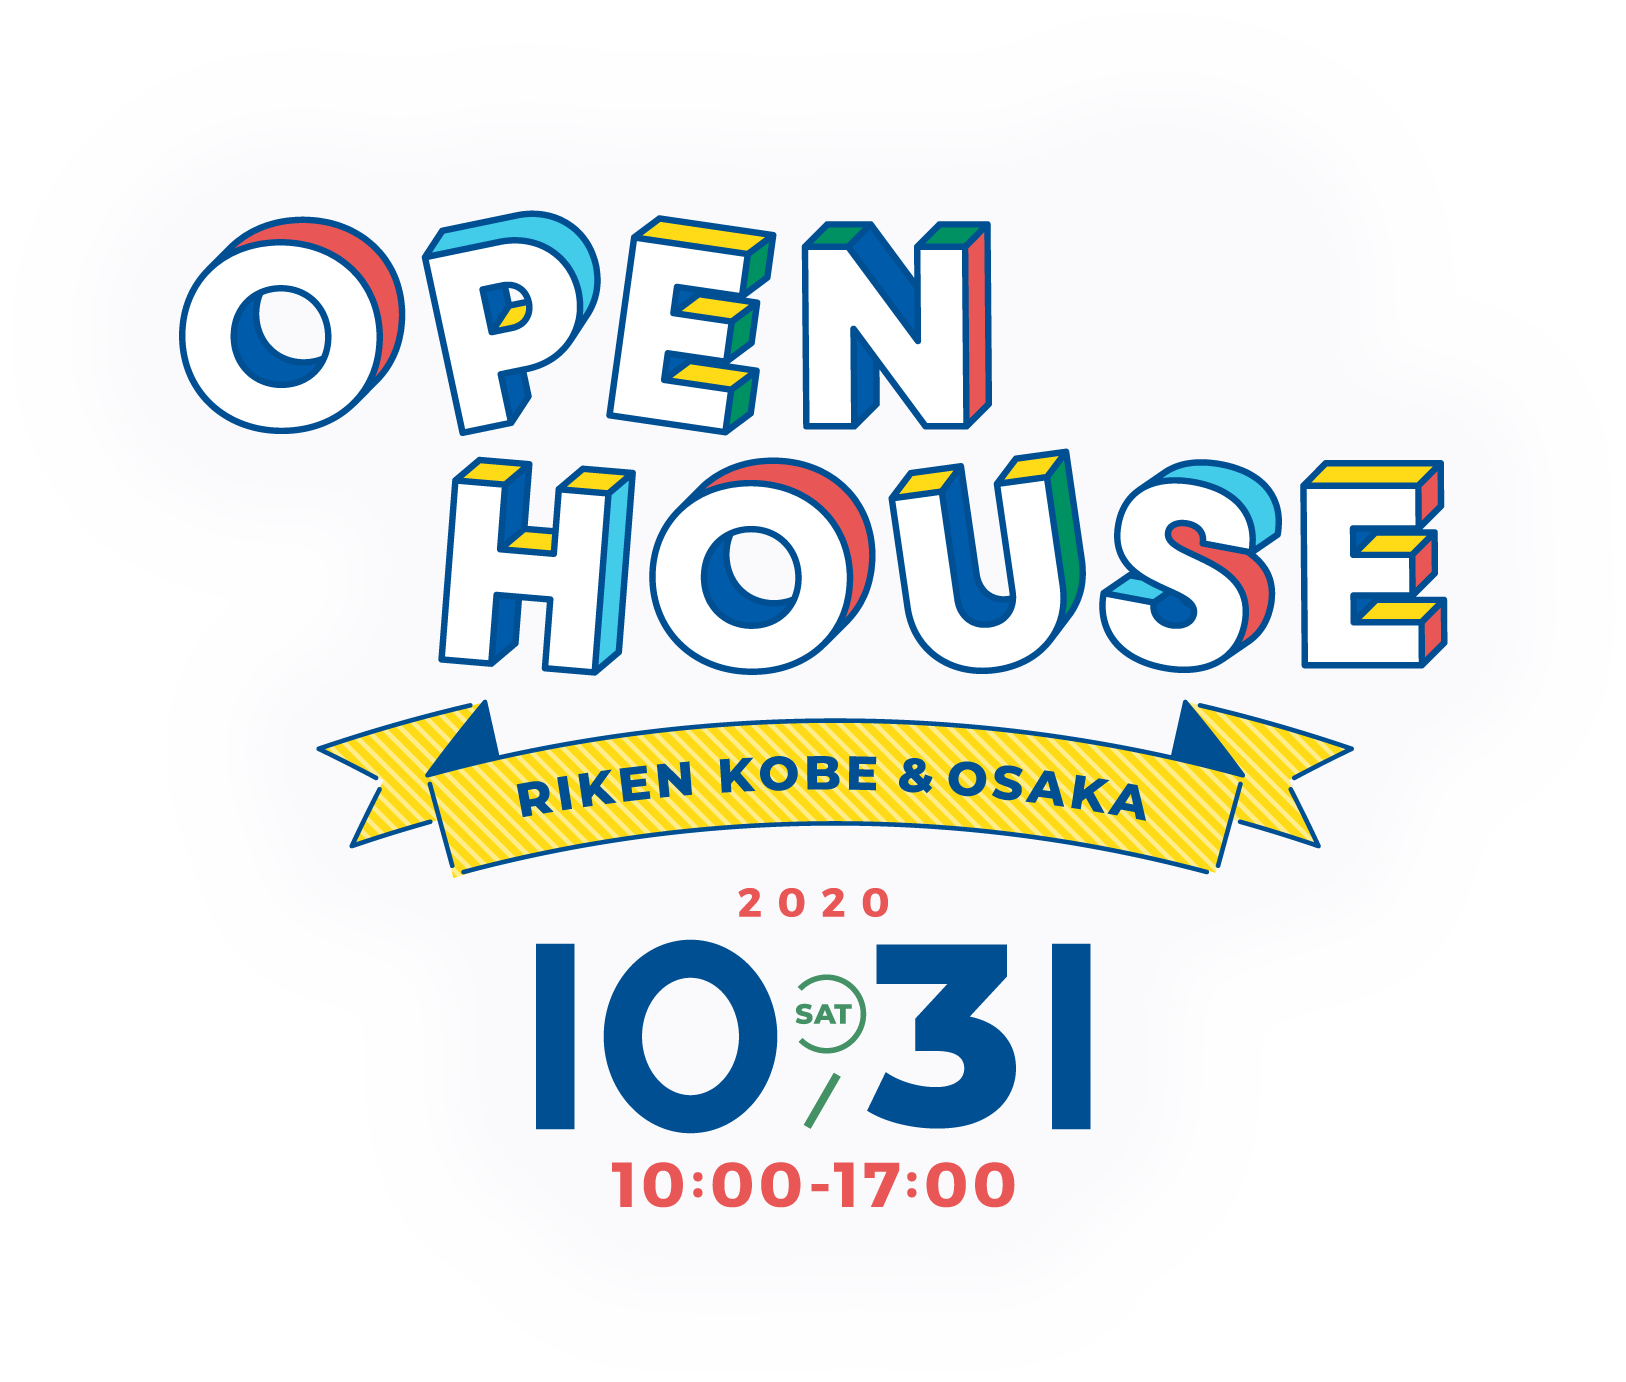 OPEN HOUSE RIKEN KOBE & OSAKA 2020.10.31(SAT) 10:00 - 17:00